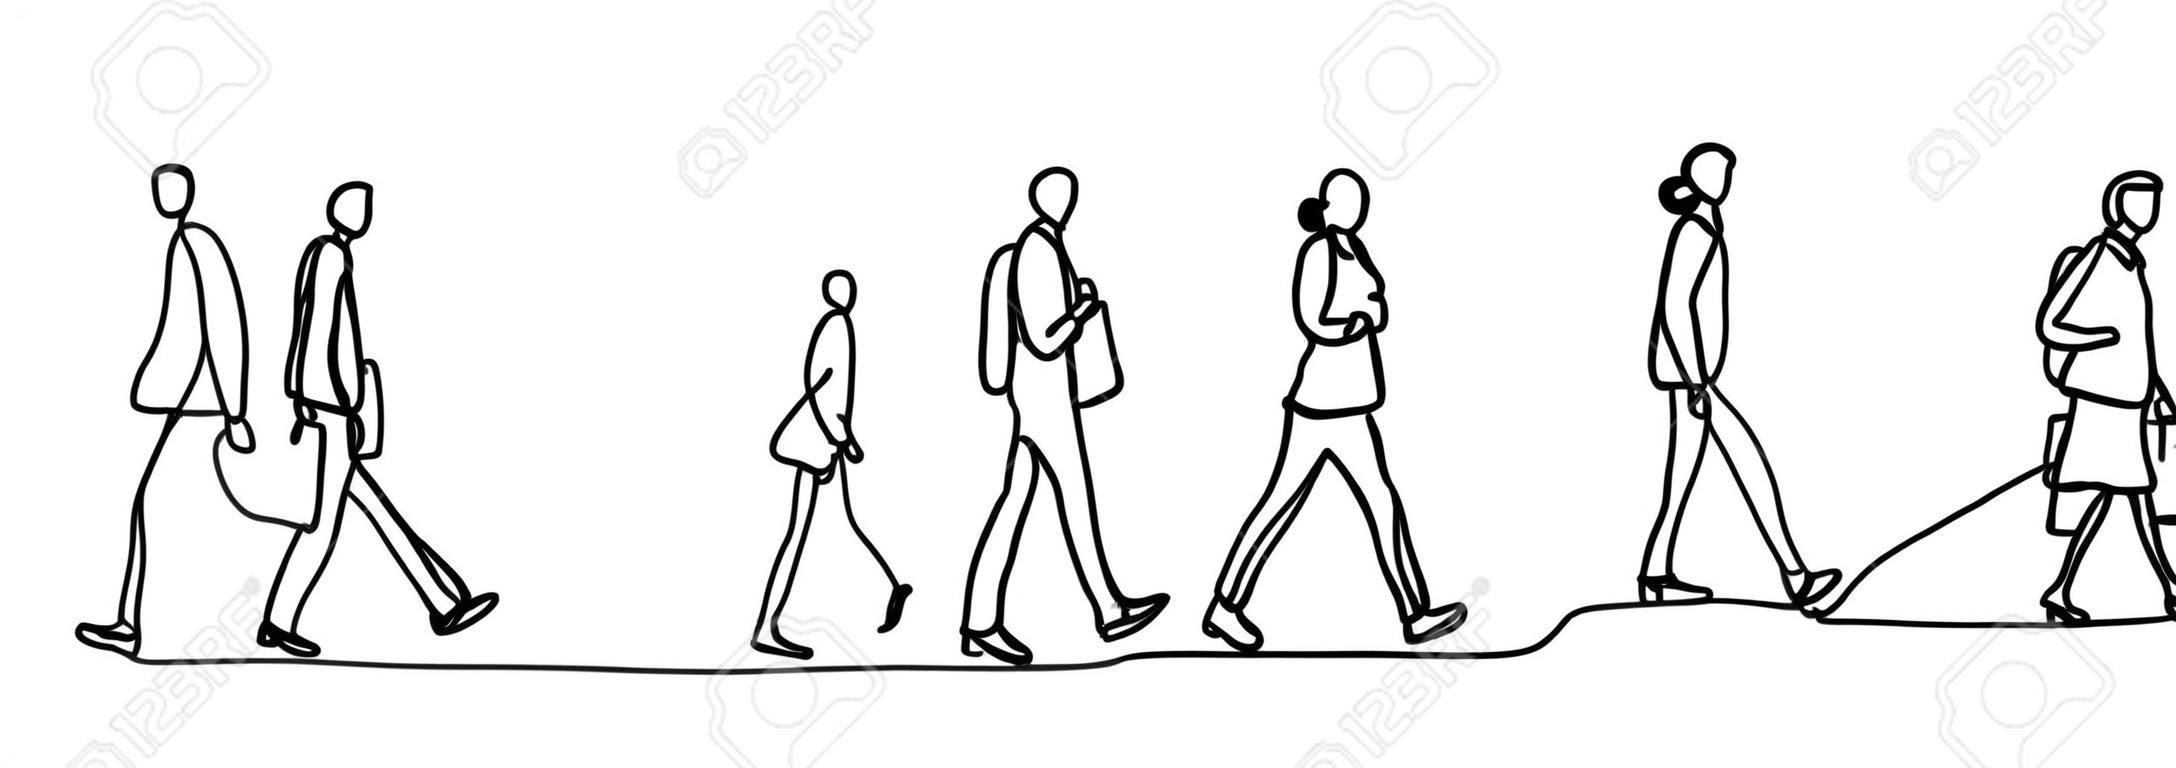 Les navetteurs urbains un dessin au trait continu minimalisme design croquis dessinés à la main illustration vectorielle. Personnes marchant avant ou après le travail.